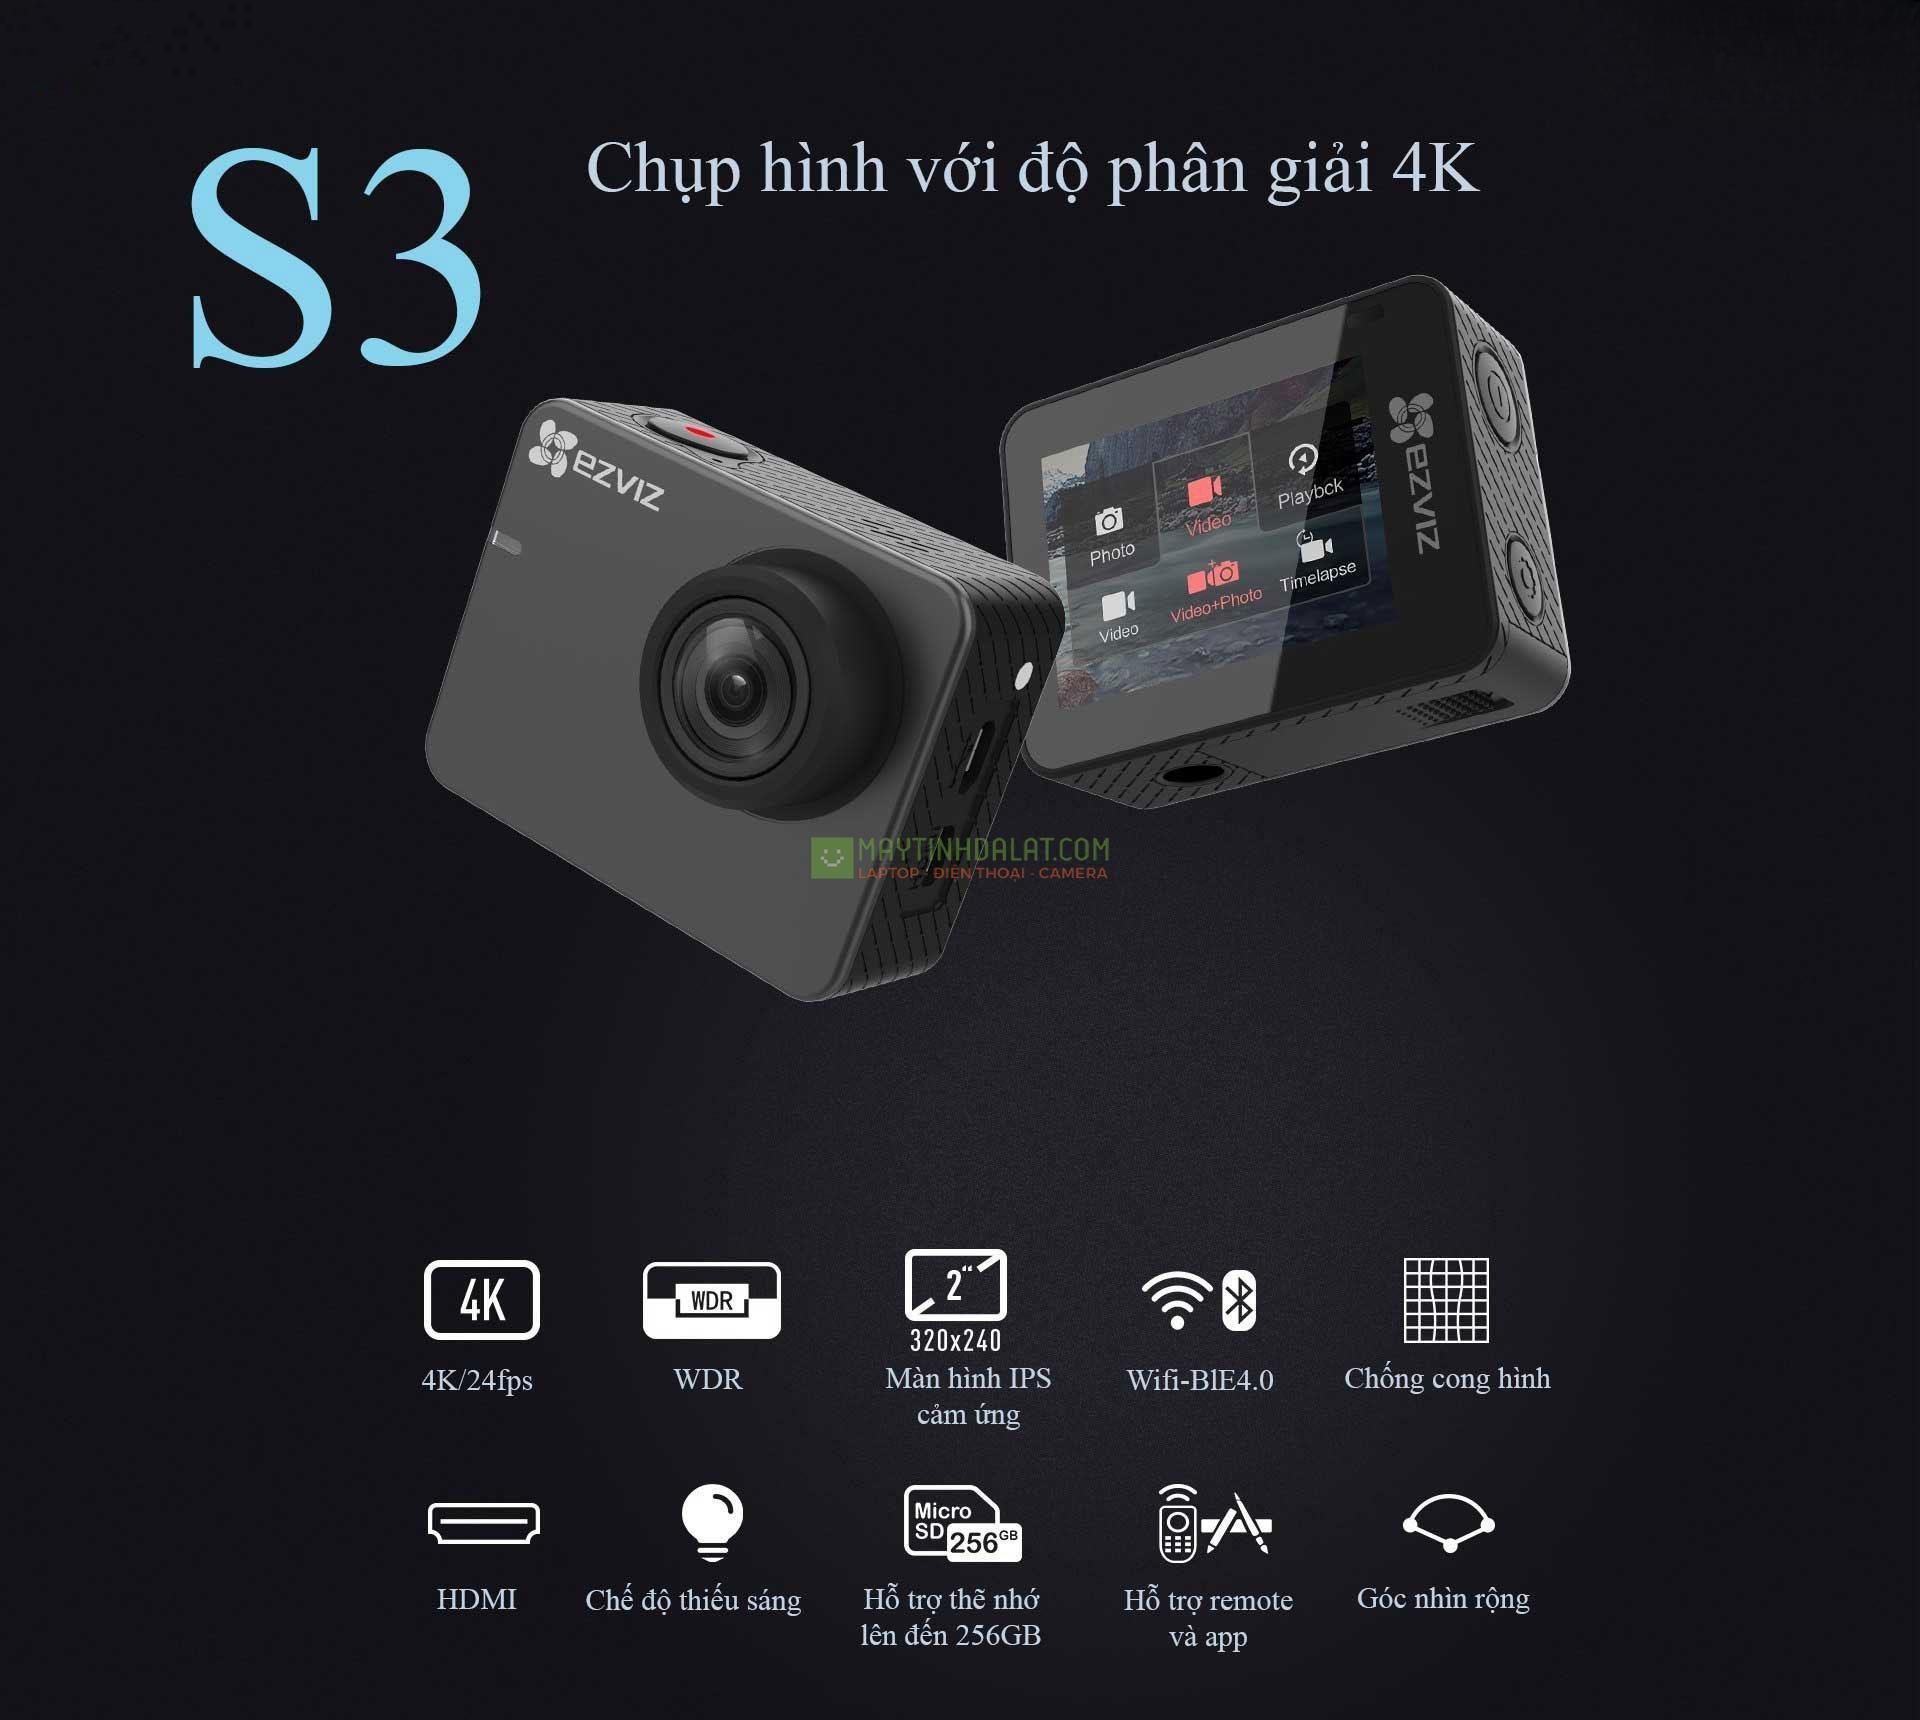 Camera hành trình EZVIZ S3 độ phân giải: 4K/24fps, 1080P/50fps Màn hình cảm ứng IPS LCD